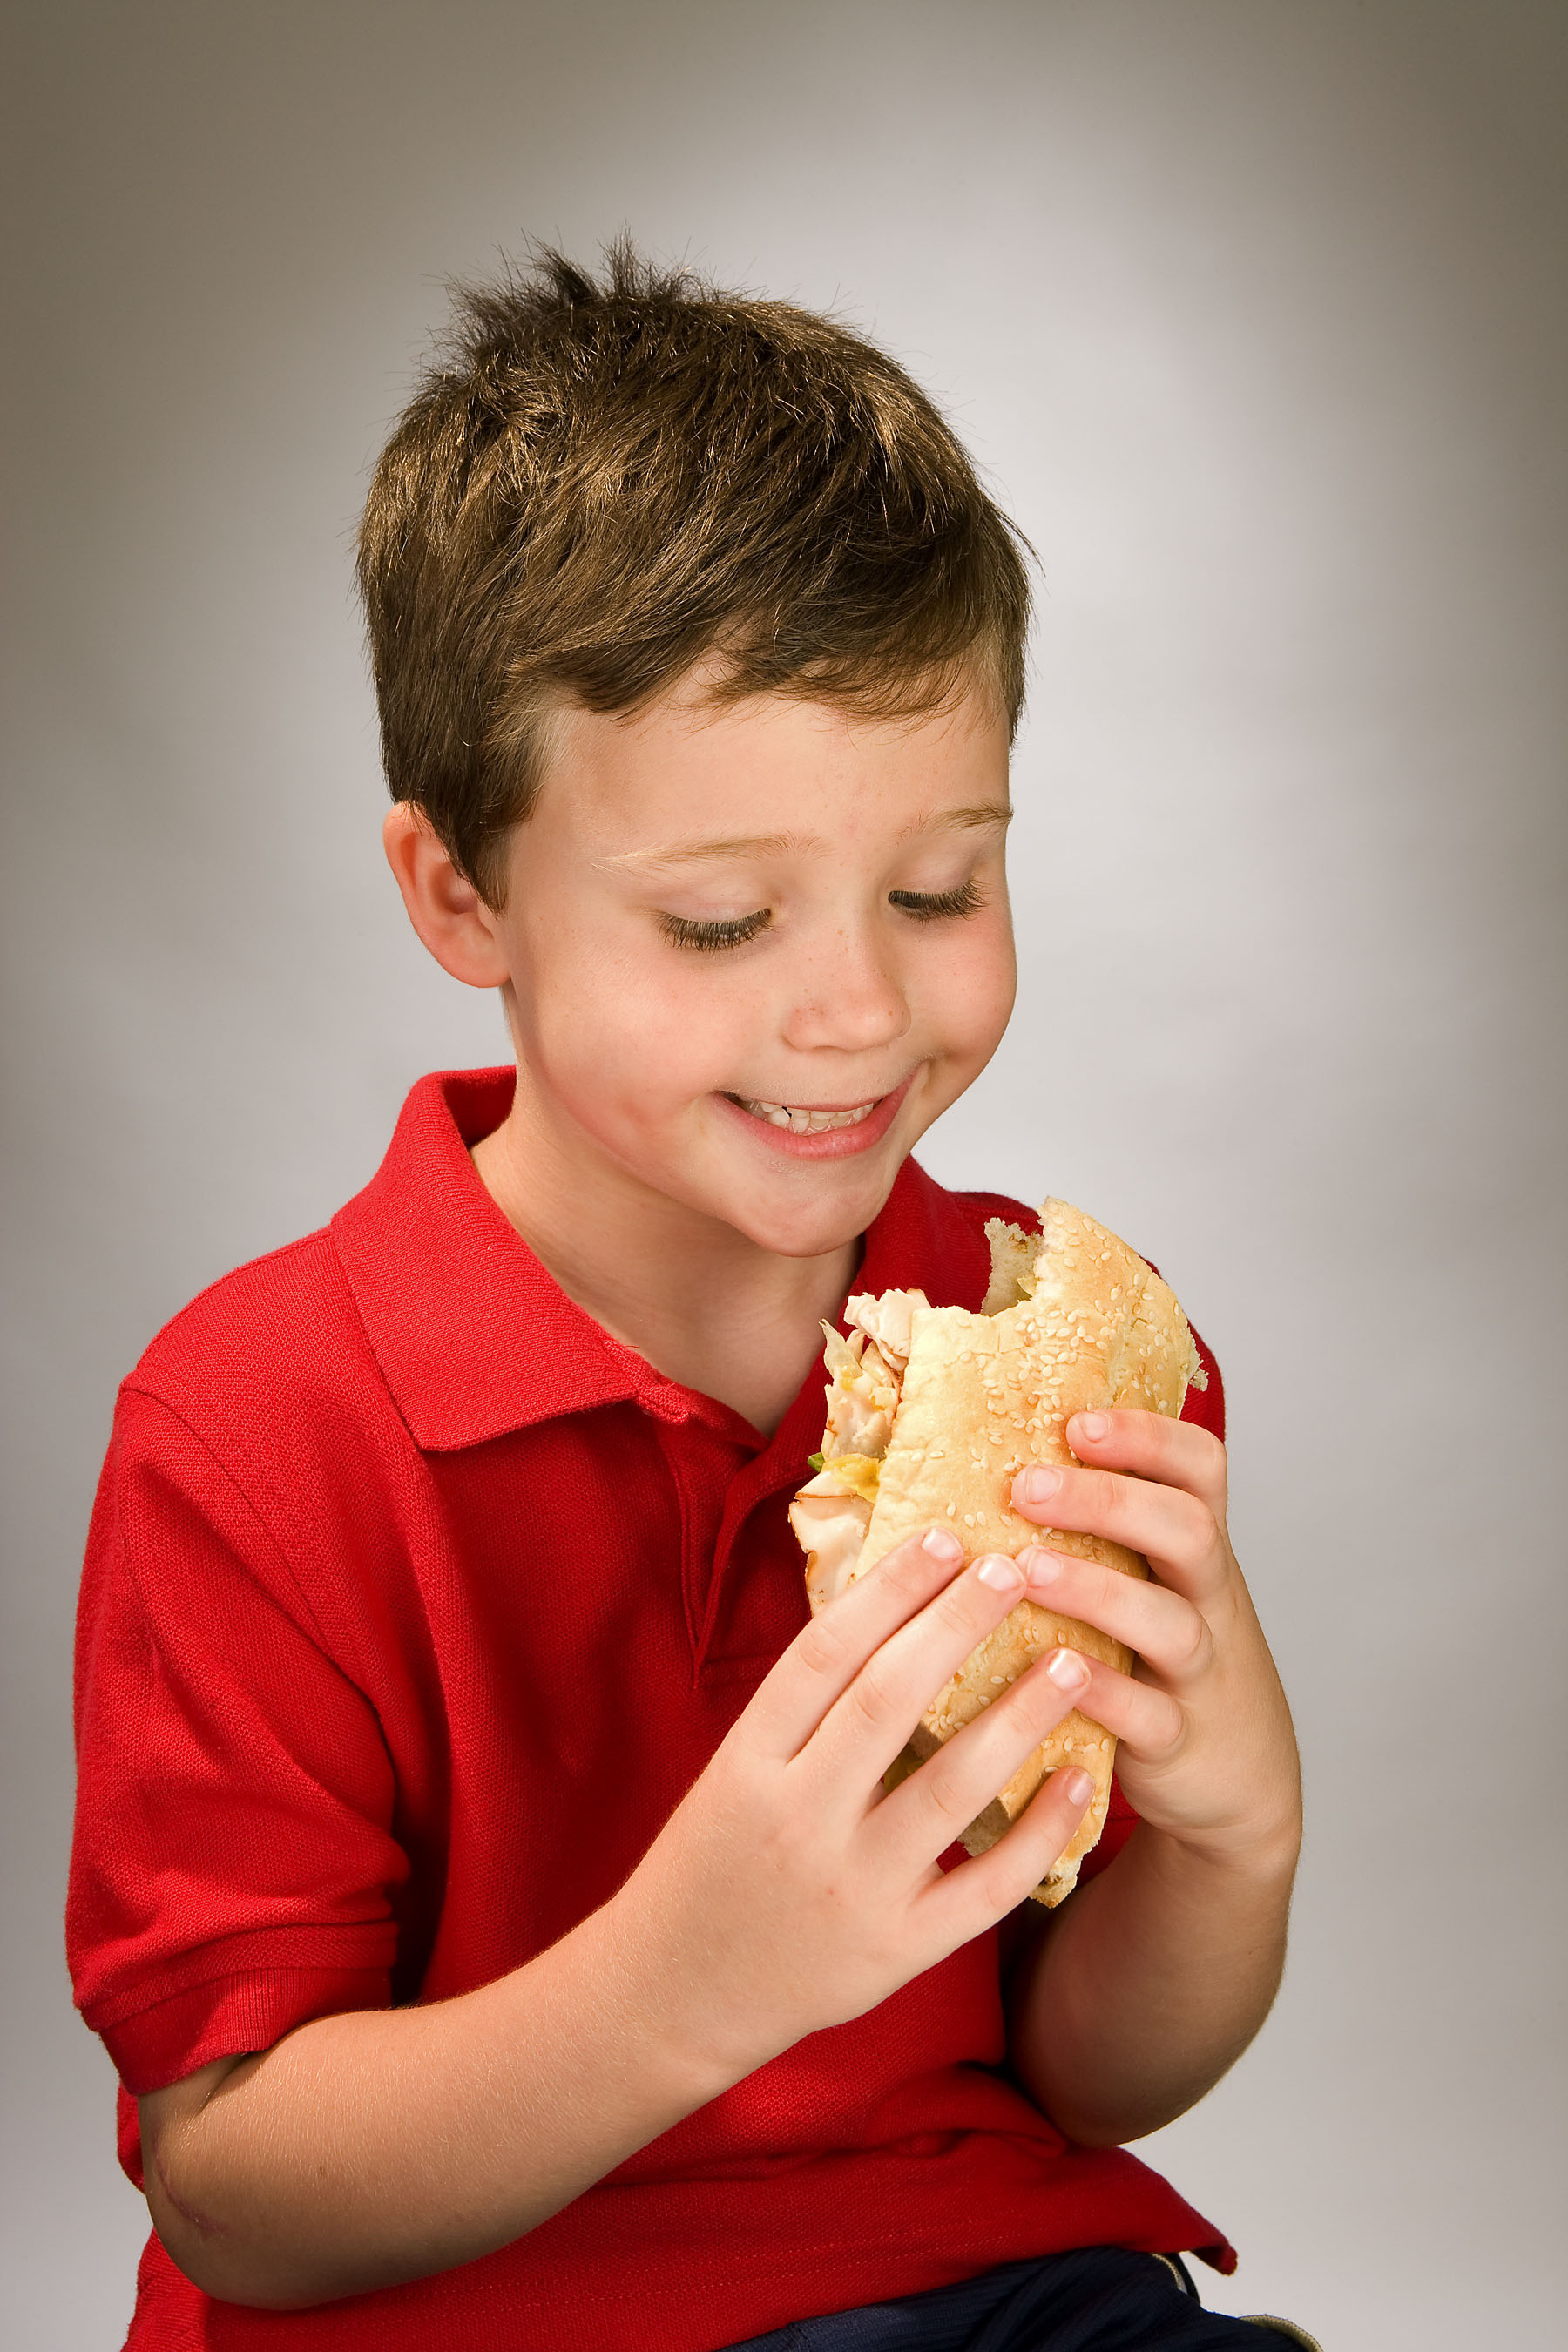 Мальчики едят девочек. Мальчик ест бутерброд. Бутерброды для детей. Человек ест бутерброд. Мальчик с бутербродом.